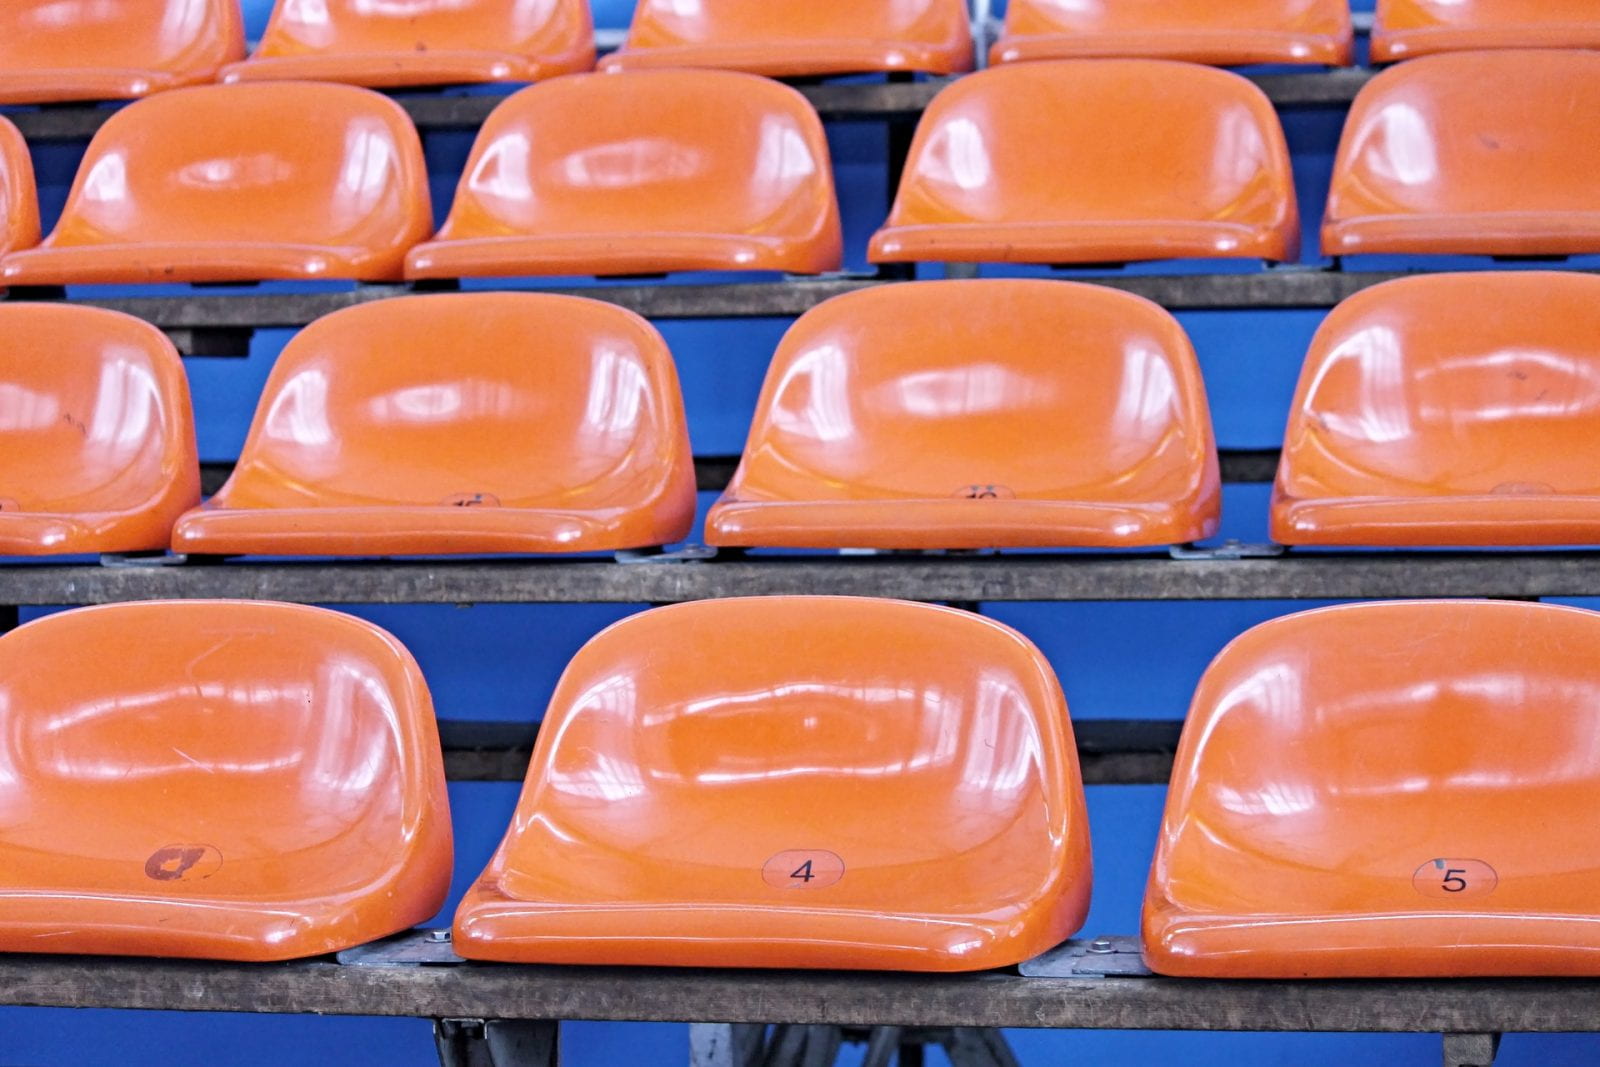 orange stadium seats on blue background